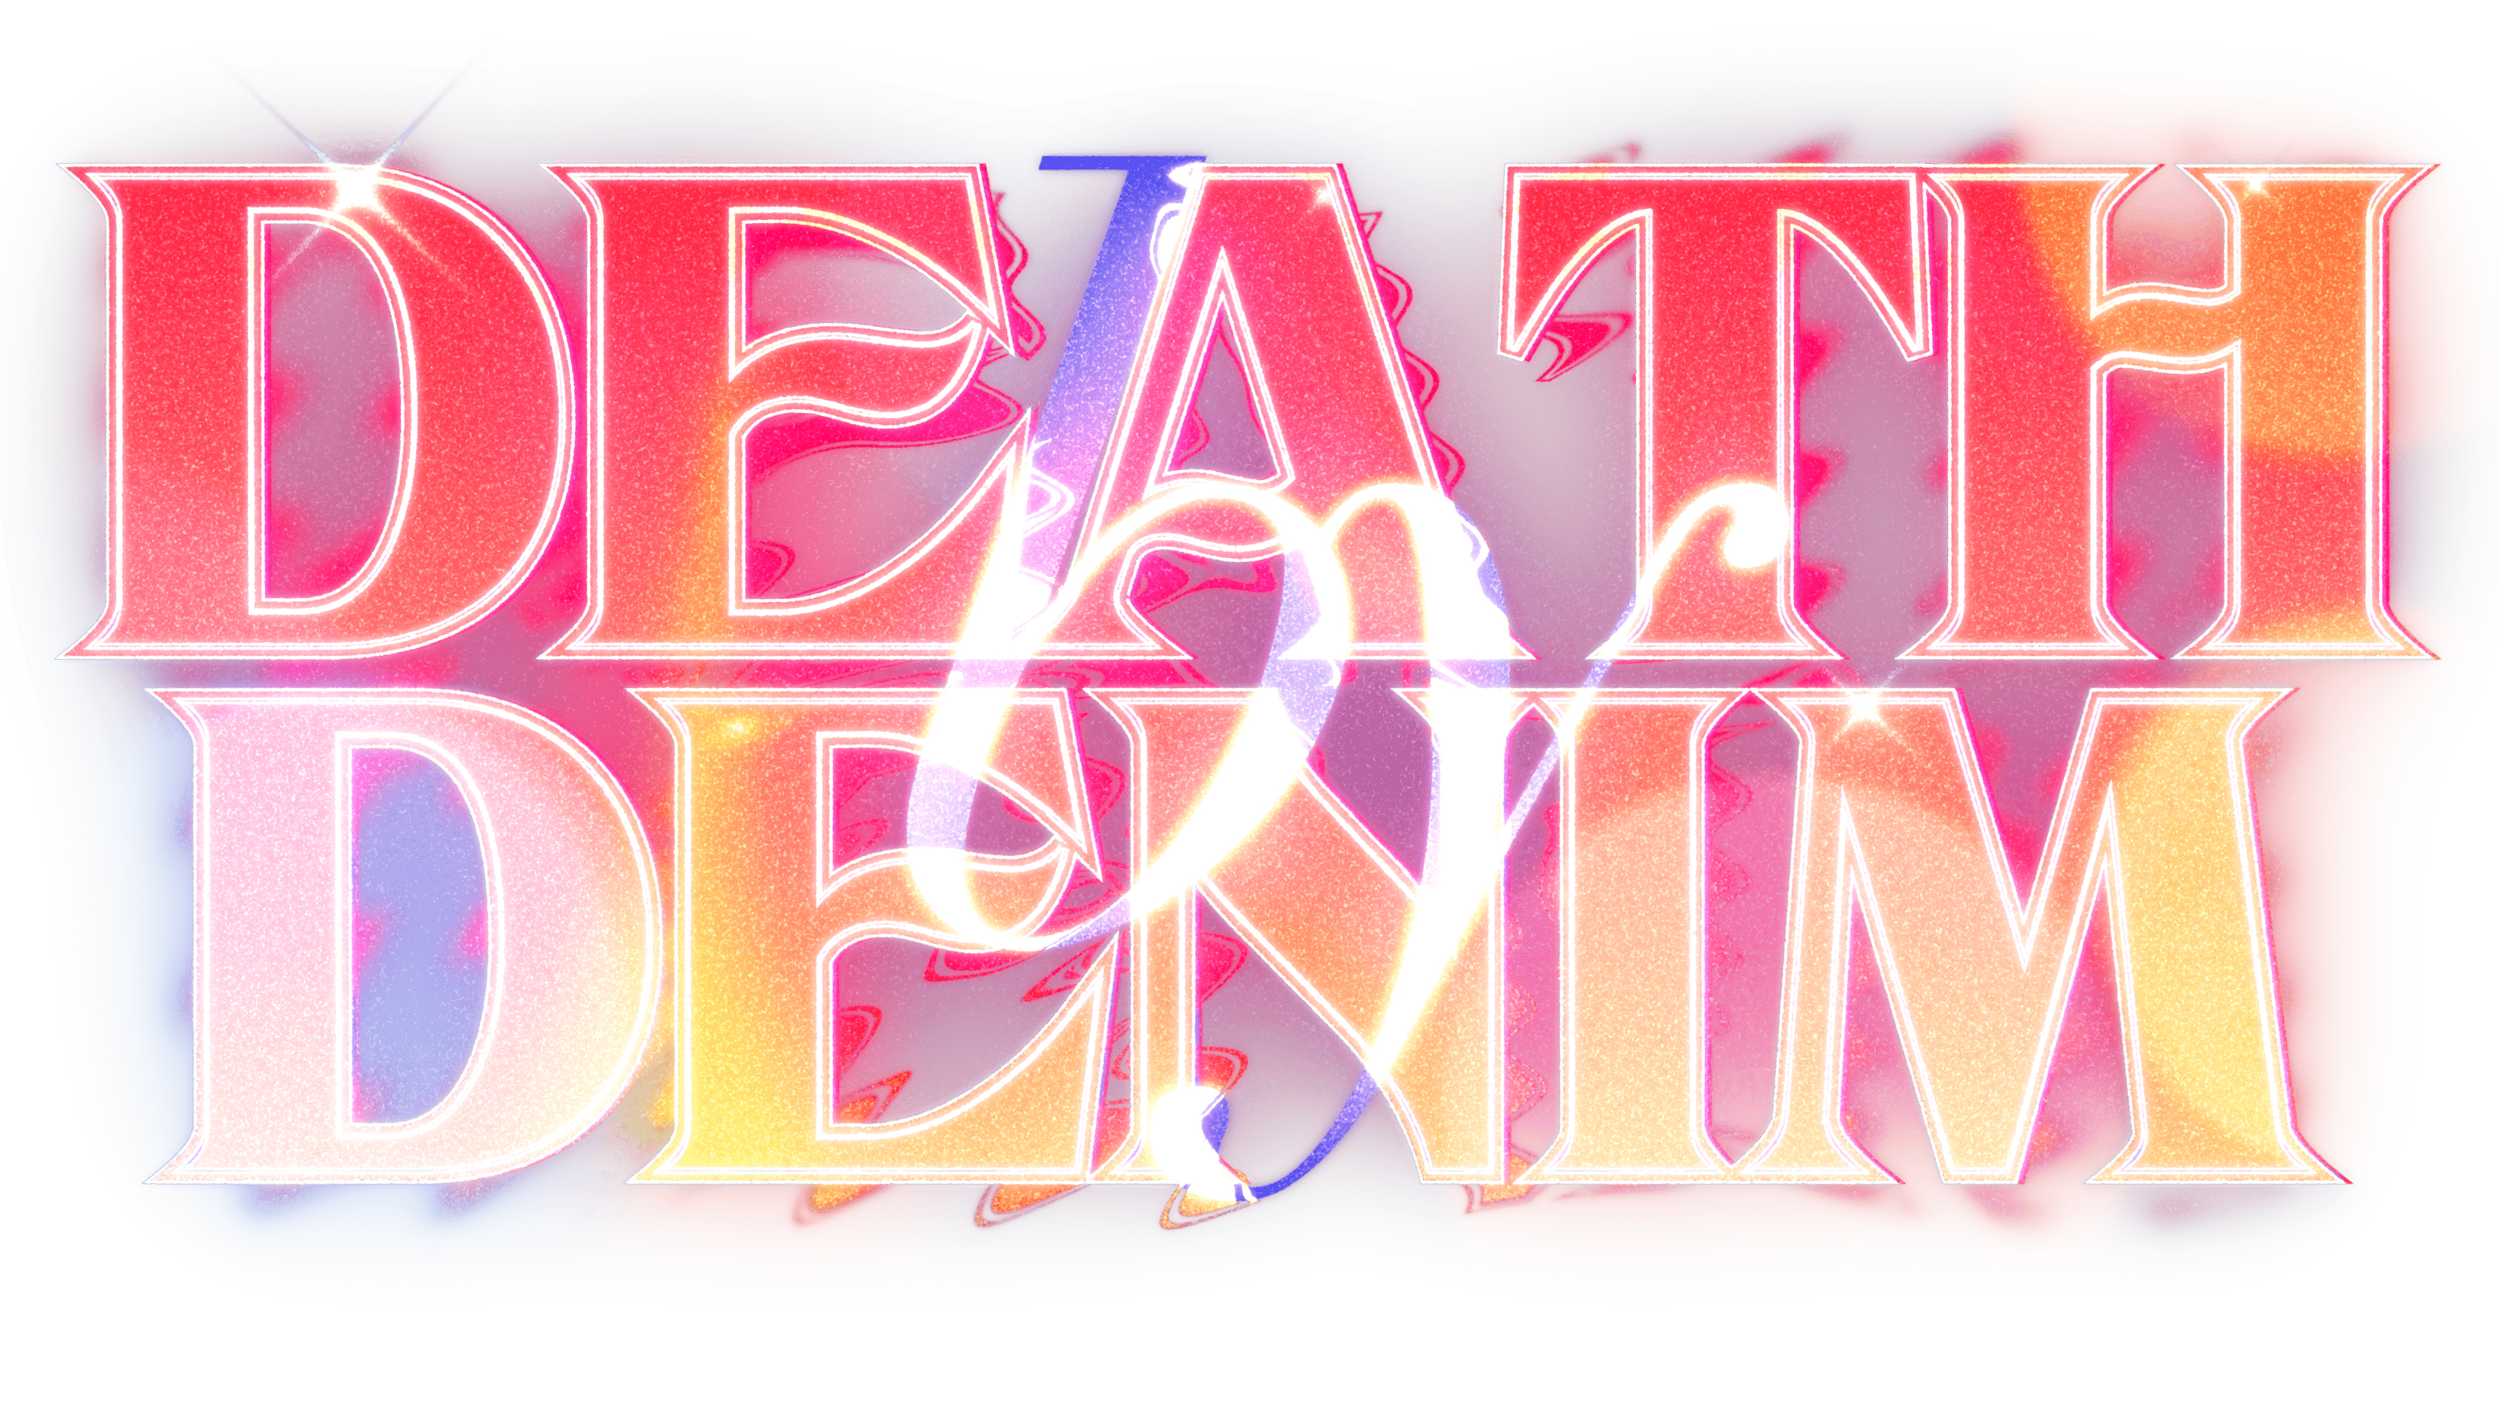 Death by Denim